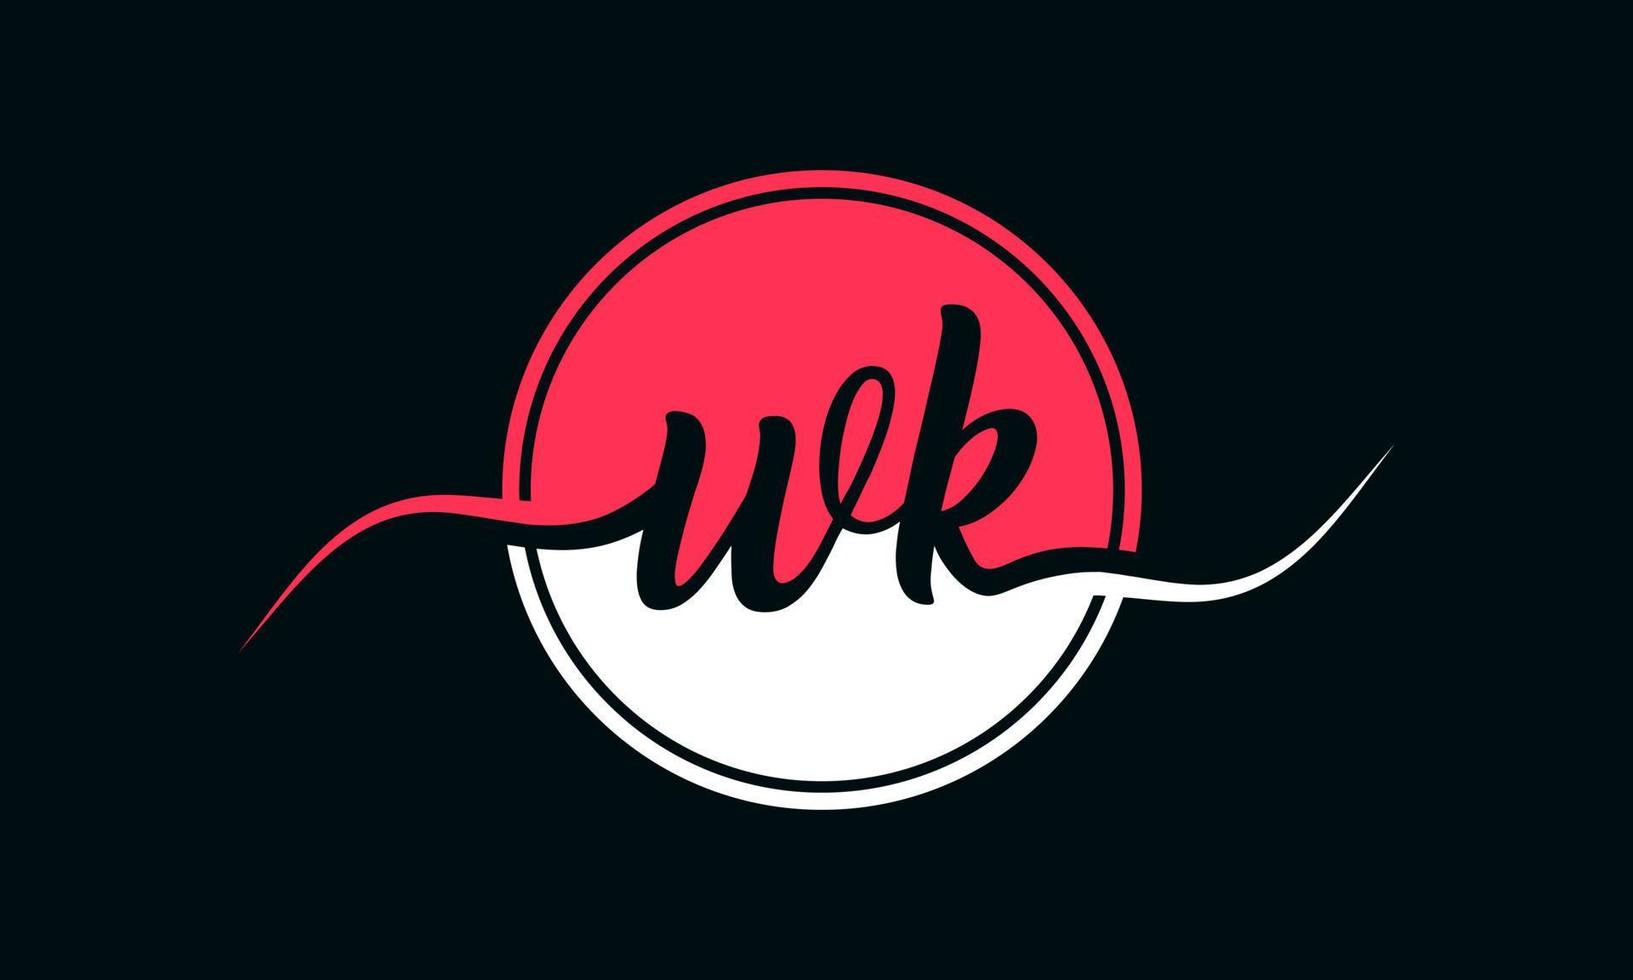 logotipo inicial da letra wk com círculo interno na cor branca e rosa. vetor profissional.